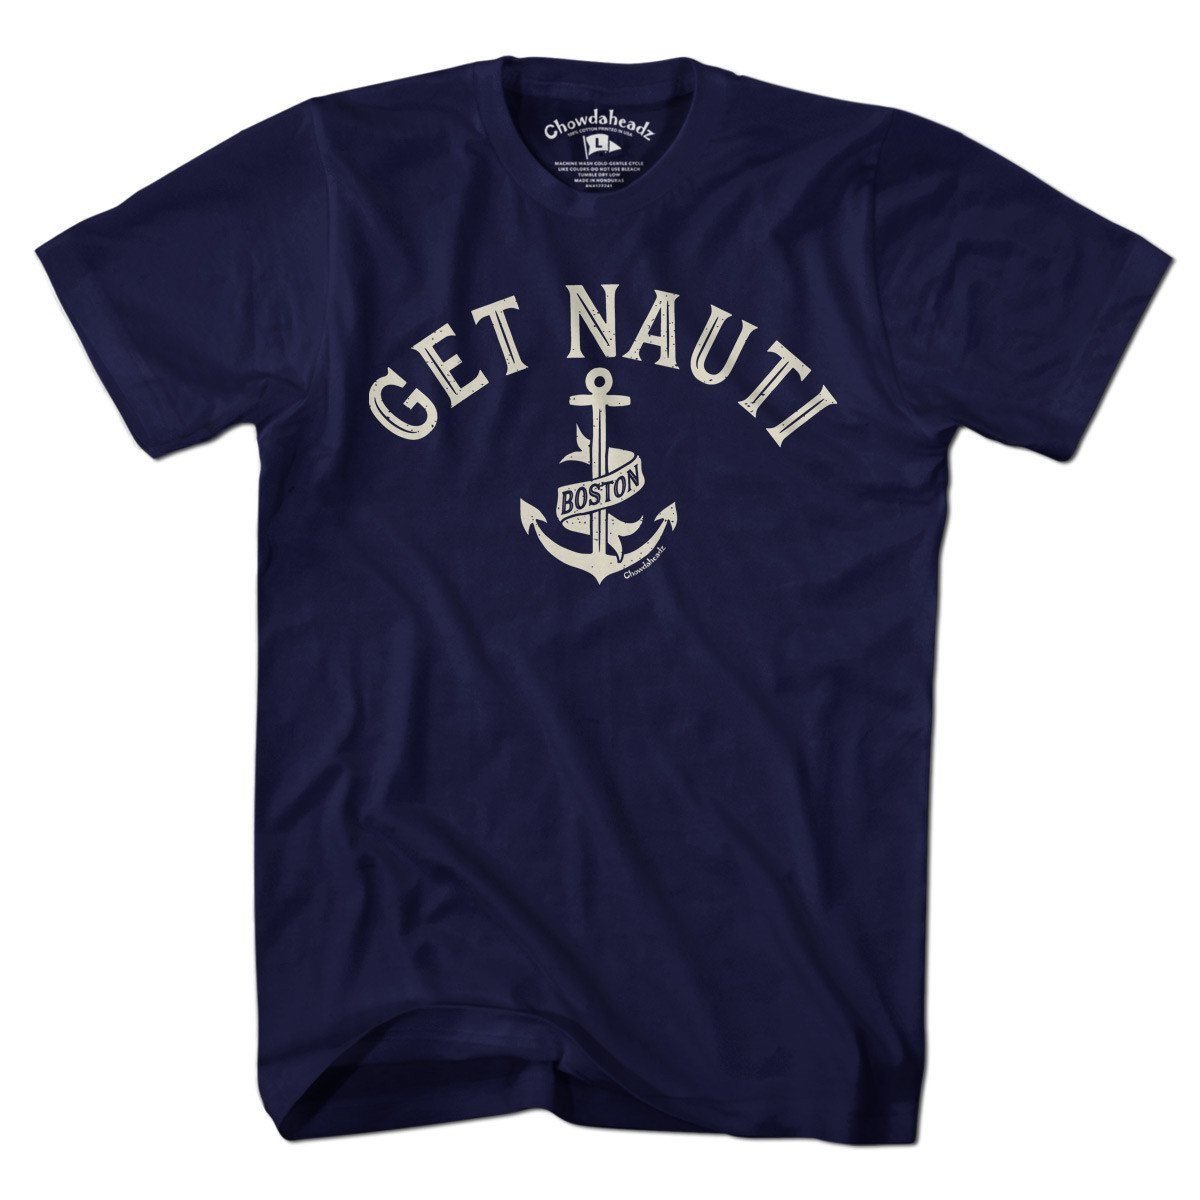 Get Nauti Boston T-shirt